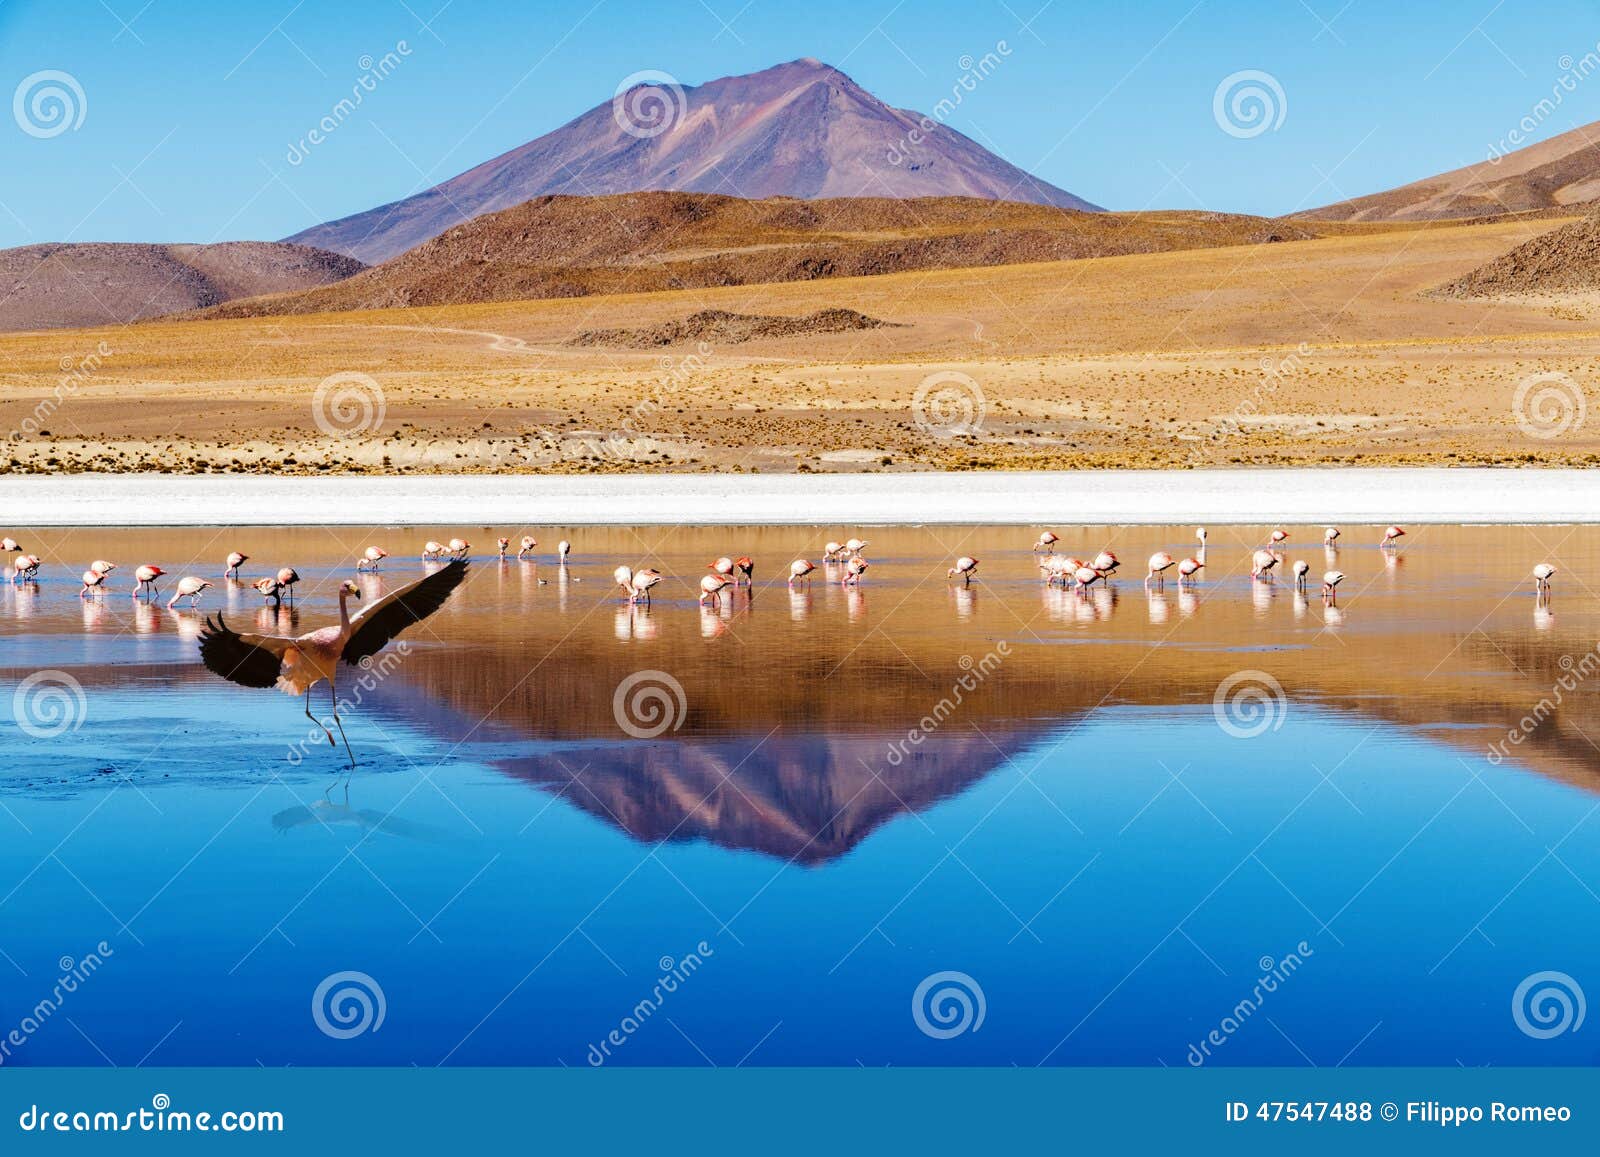 laguna bolivia landing flamingo